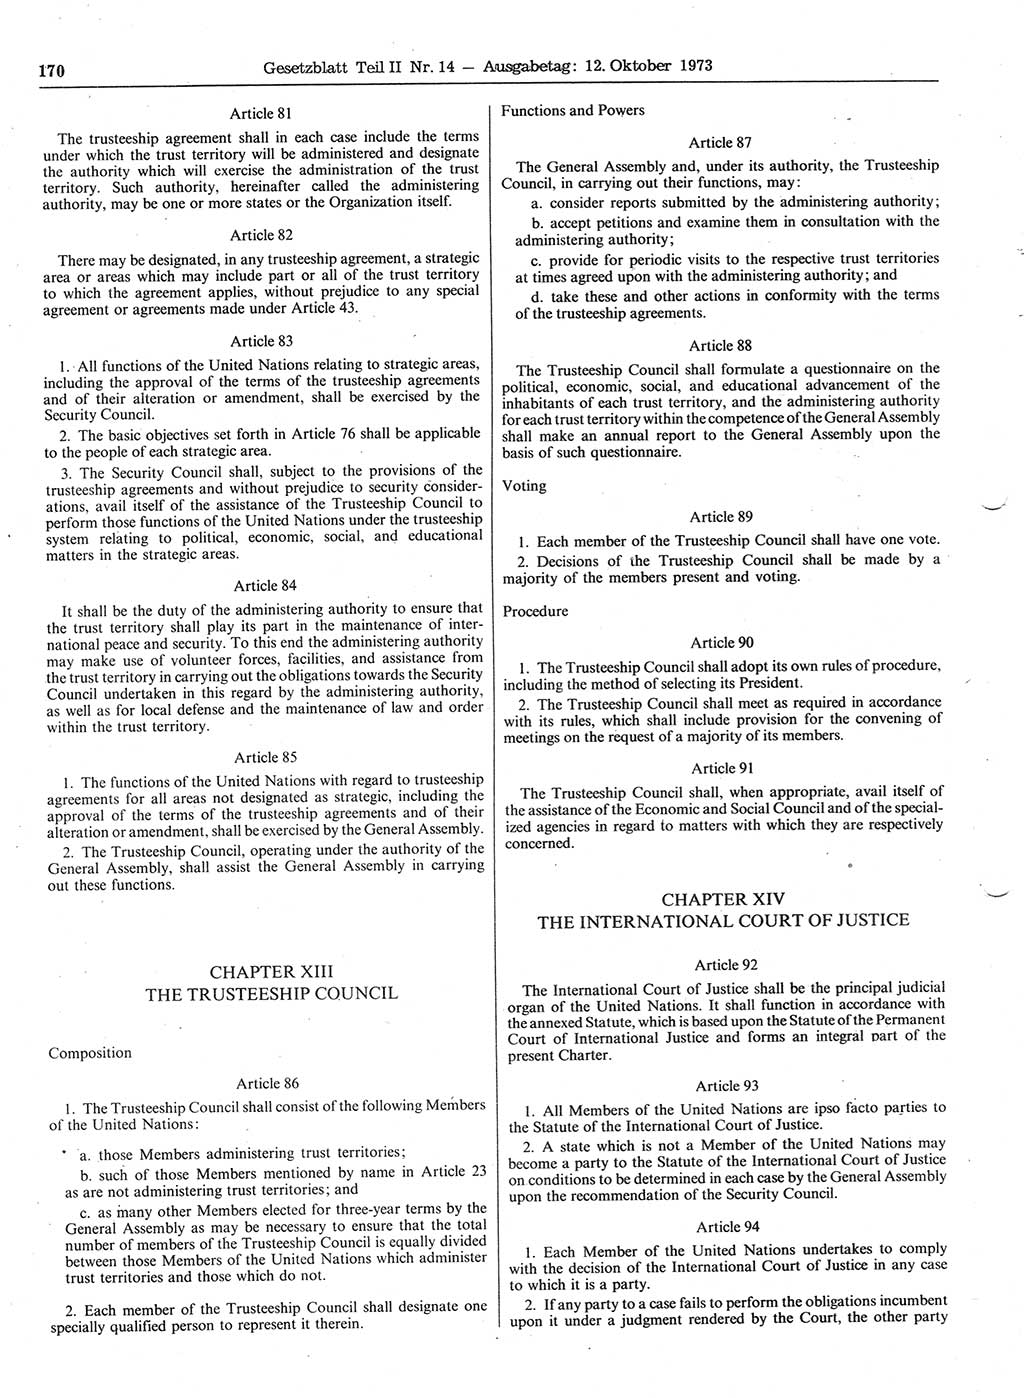 Gesetzblatt (GBl.) der Deutschen Demokratischen Republik (DDR) Teil ⅠⅠ 1973, Seite 170 (GBl. DDR ⅠⅠ 1973, S. 170)